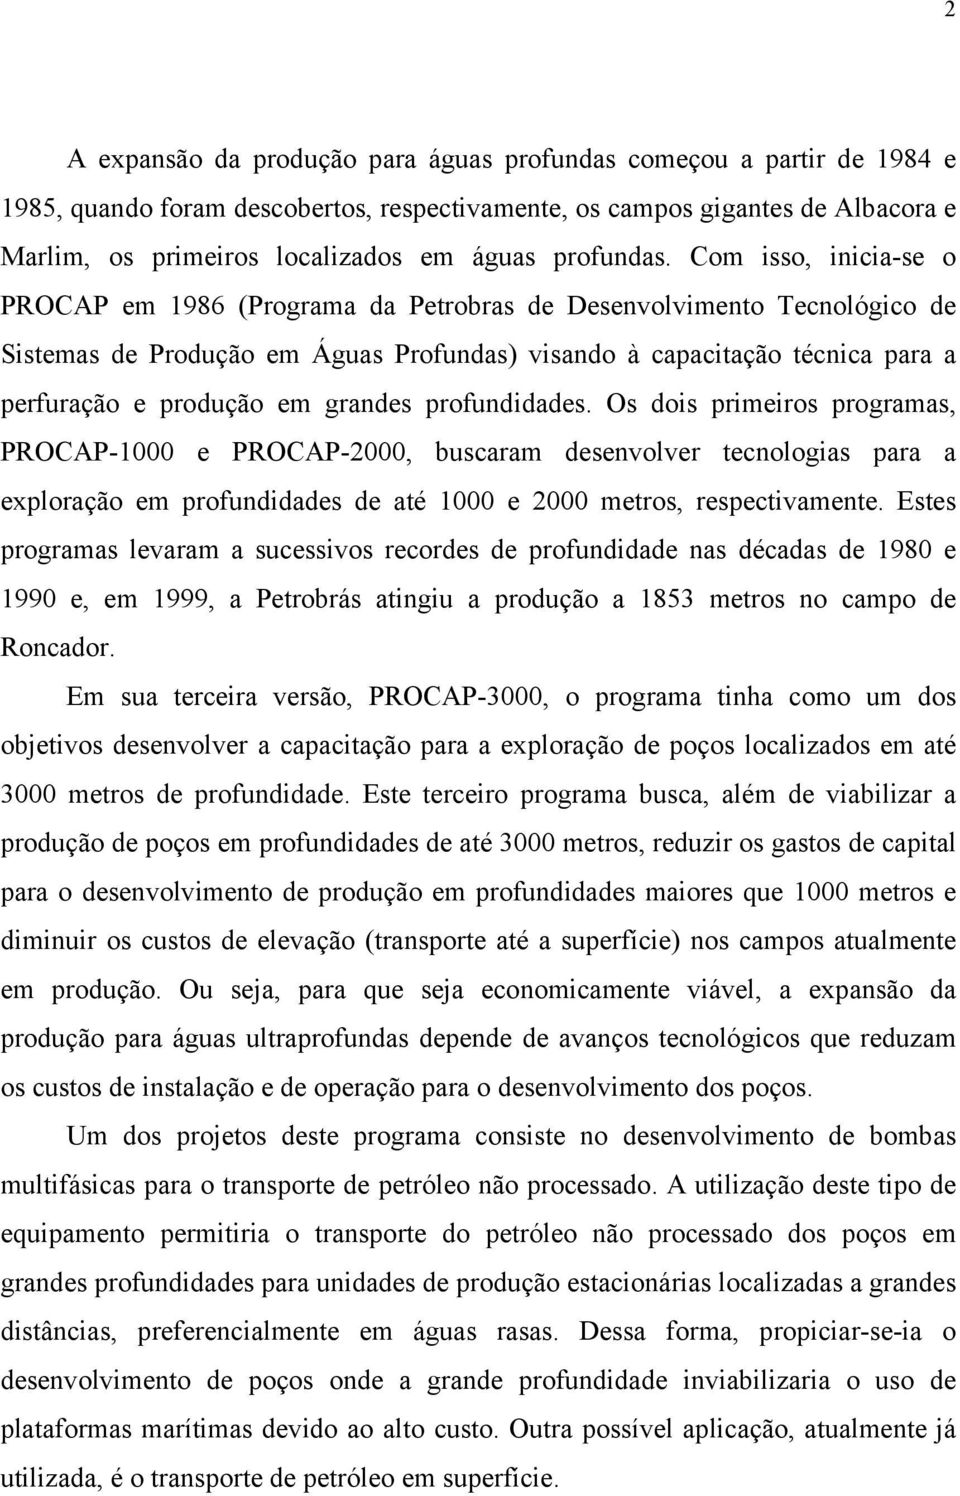 Com isso, inicia-se o PROCAP em 1986 (Programa da Petrobras de Desenvolvimento Tecnológico de Sistemas de Produção em Águas Profundas) visando à capacitação técnica para a perfuração e produção em